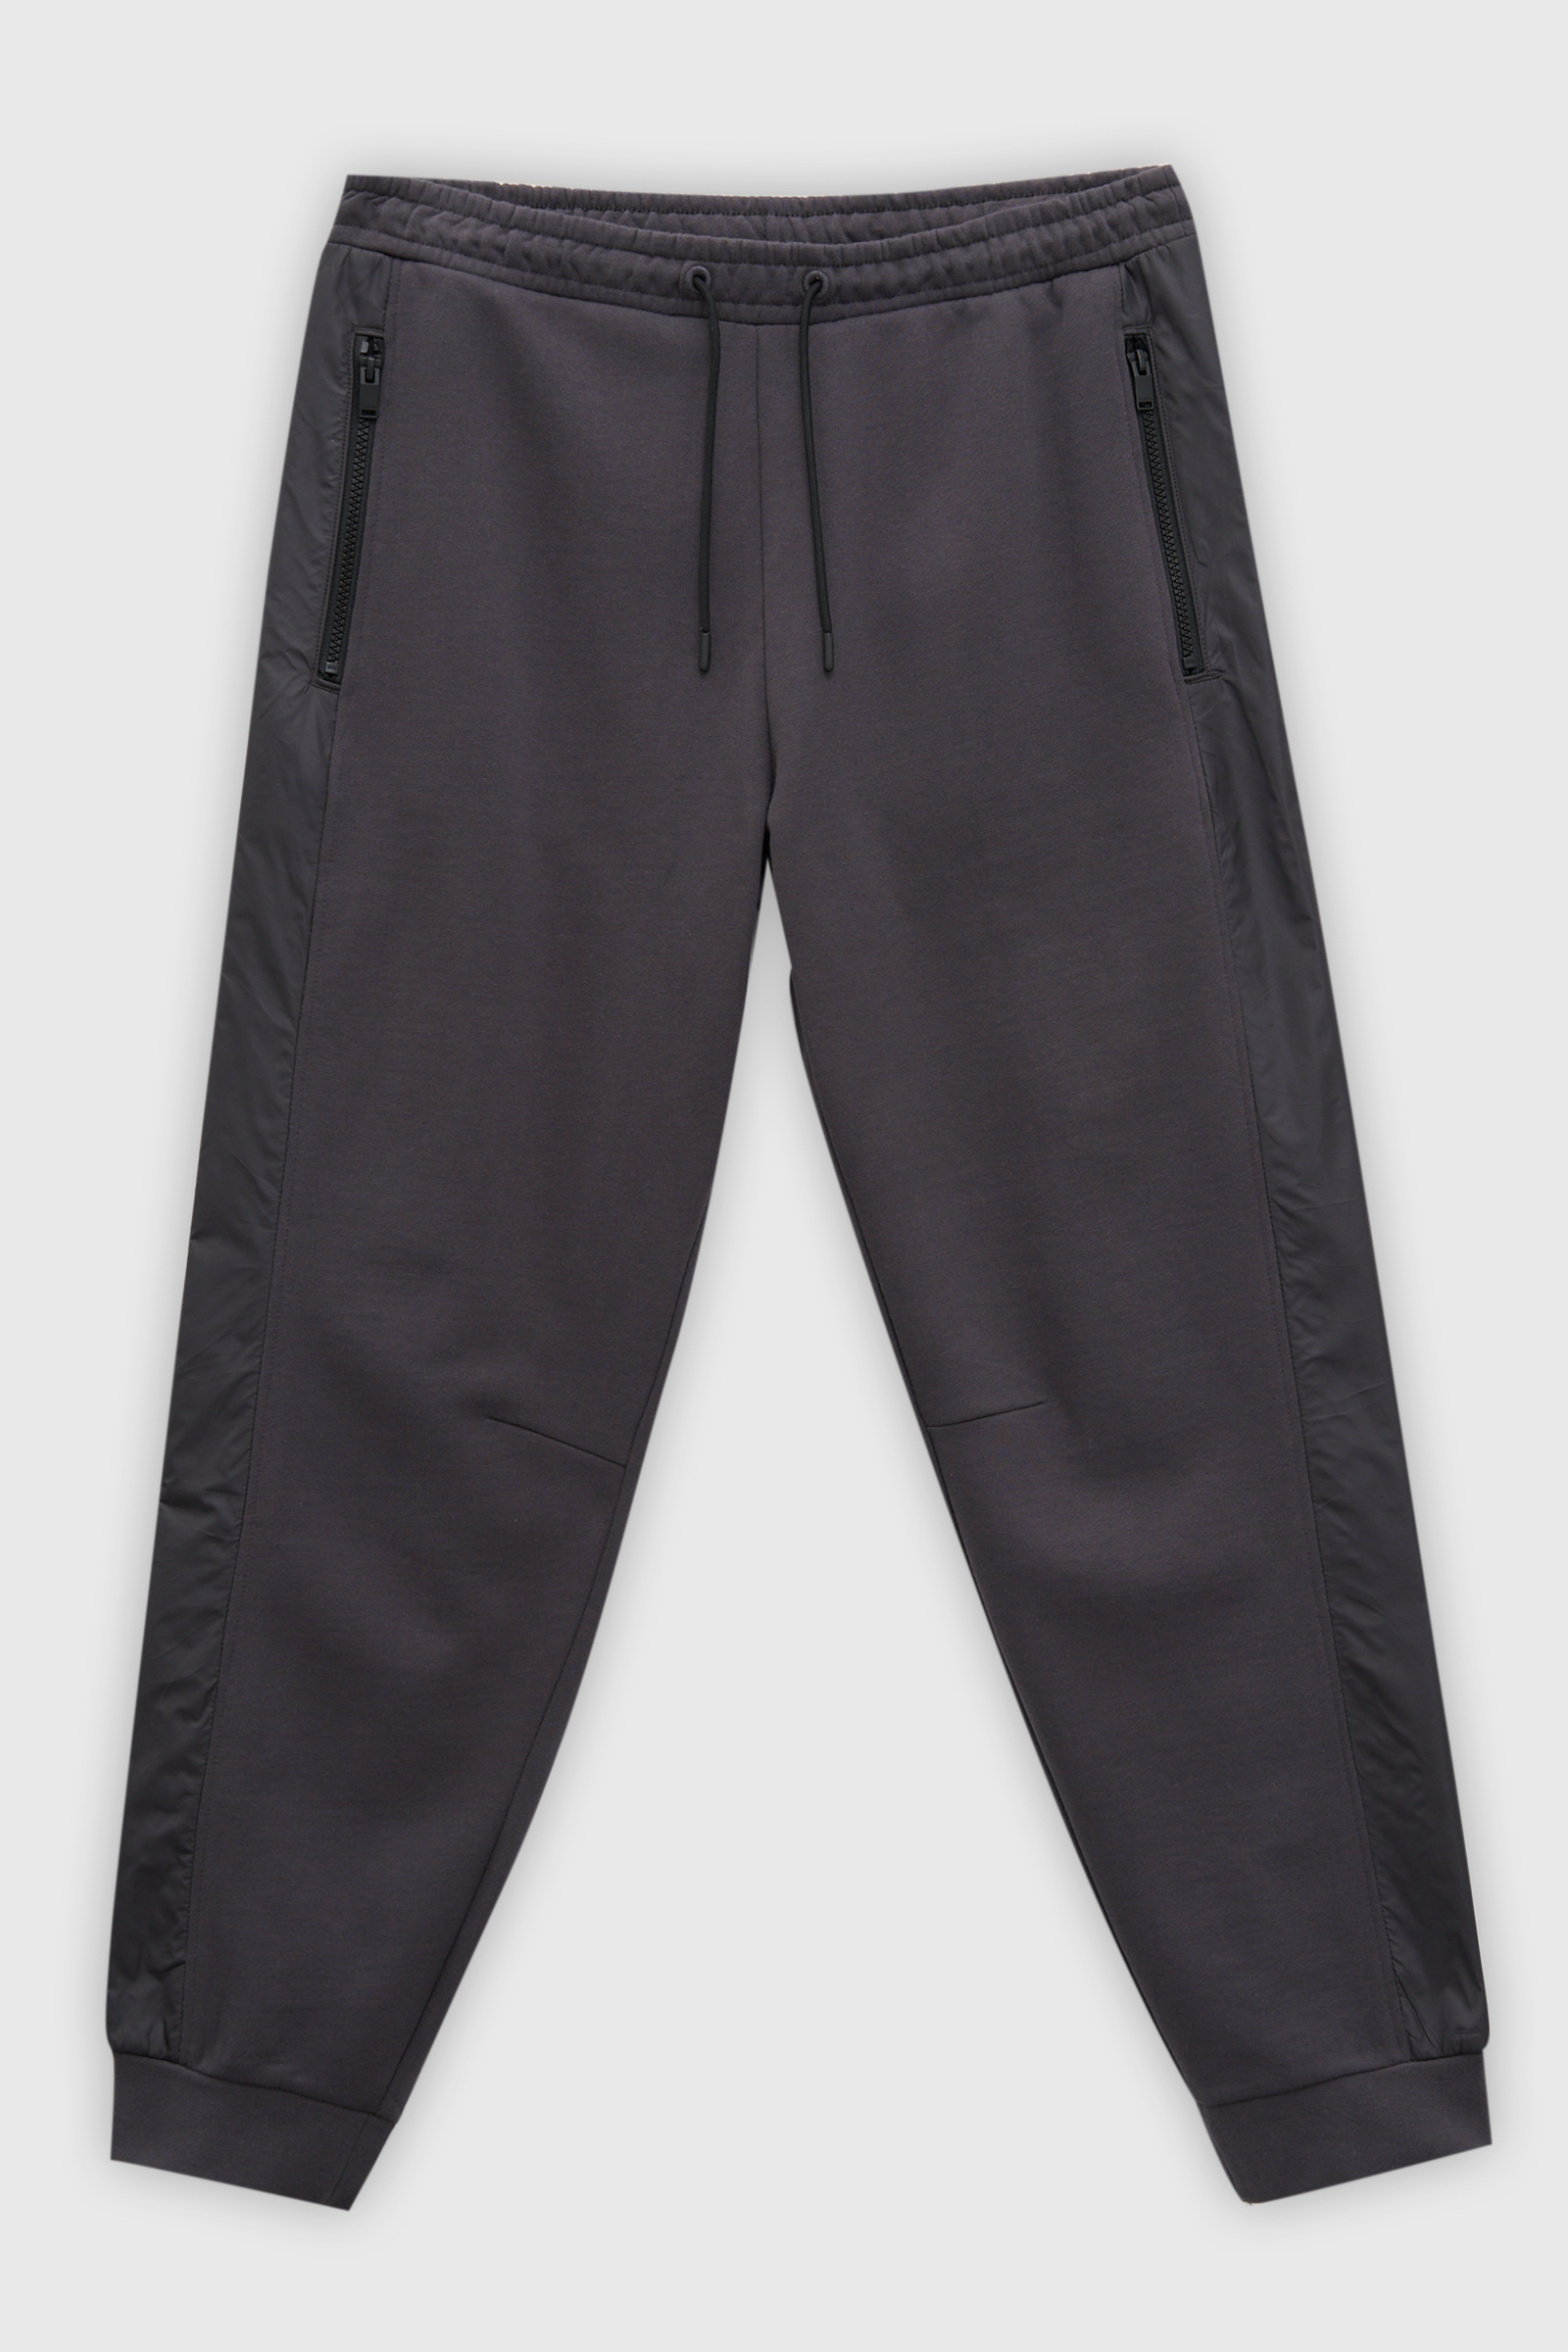 Спортивные брюки мужские Finn Flare FAD21030 серые S